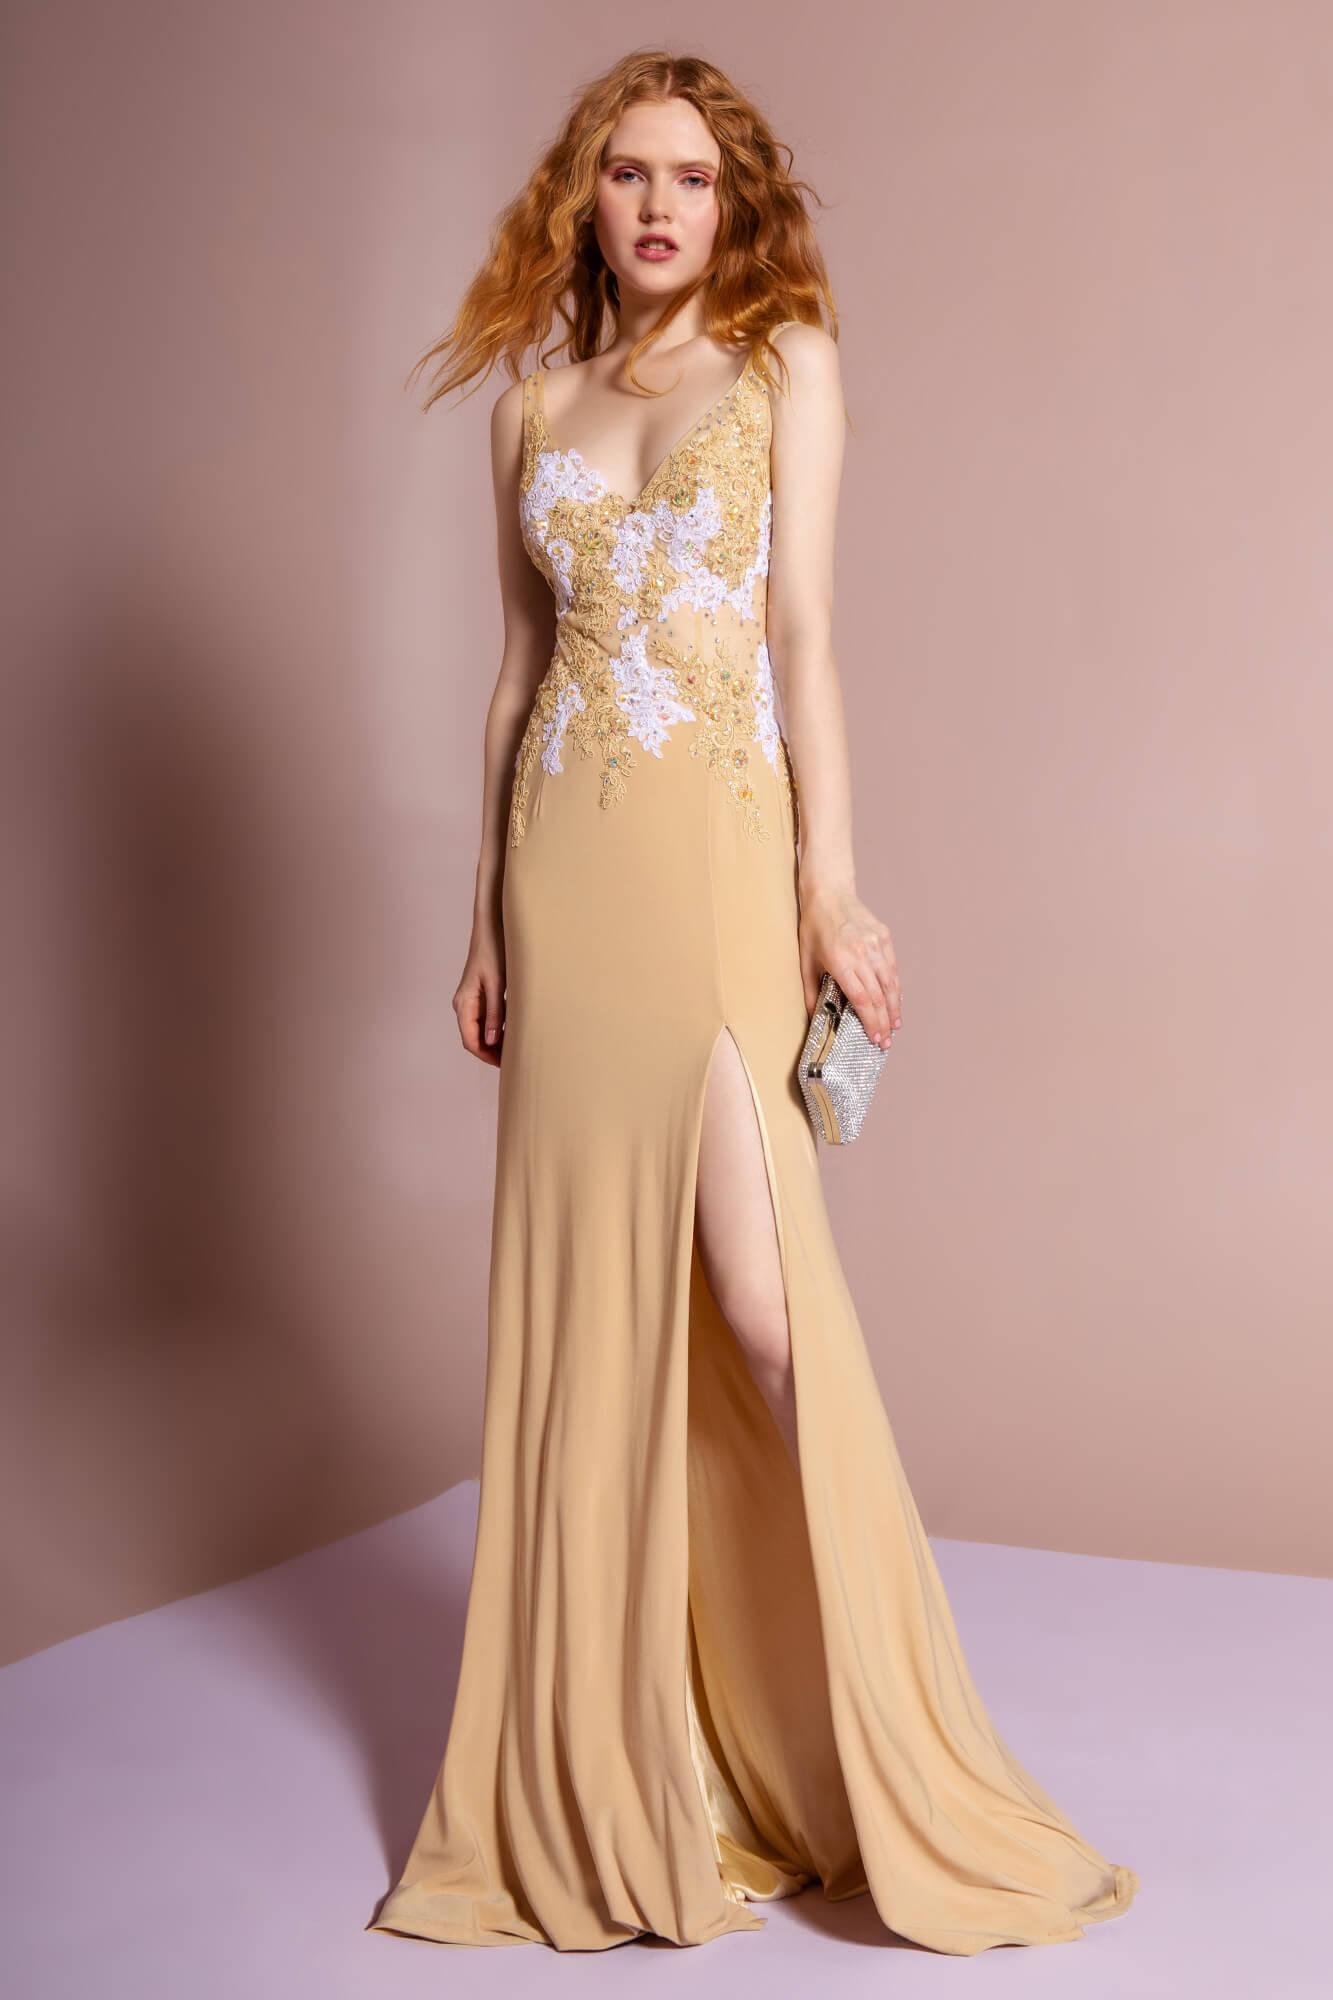 Mermaid Fit Long Formal Evening Prom Dress - The Dress Outlet Elizabeth K